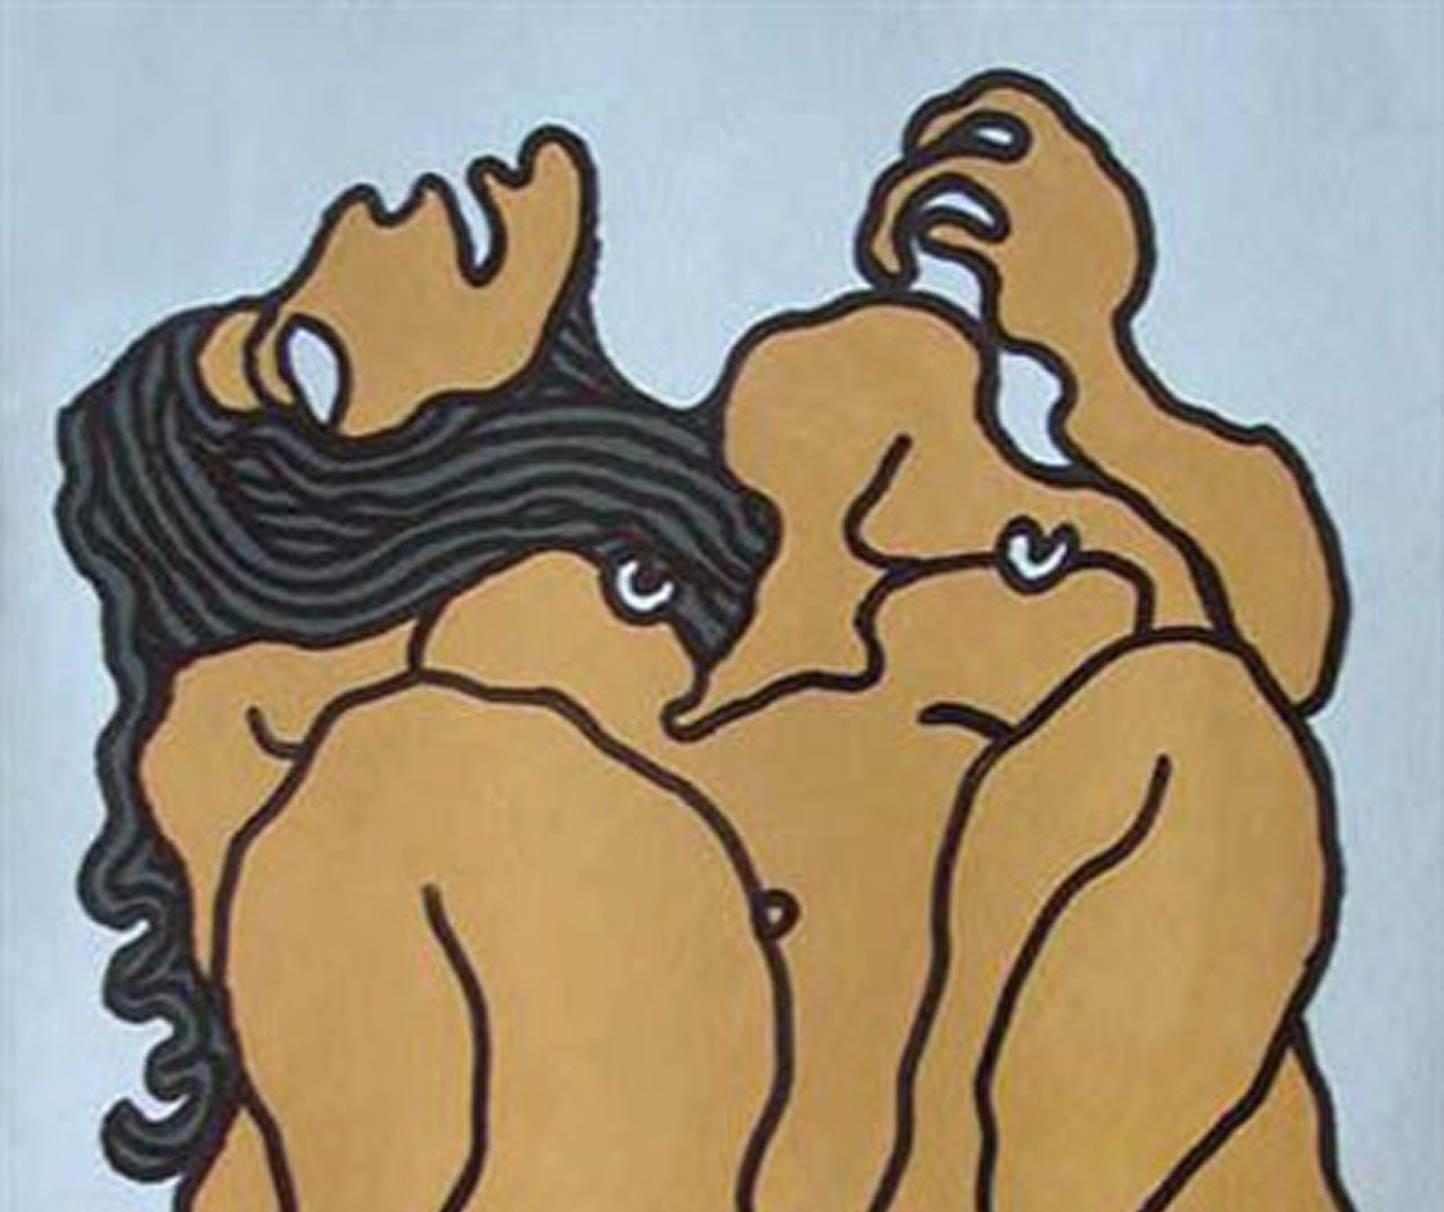 Grandes femmes nues aux yeux larges, cheveux longs, peinture de techniques mixtes, marron vif « en stock » - Moderne Painting par Prokash Karmakar